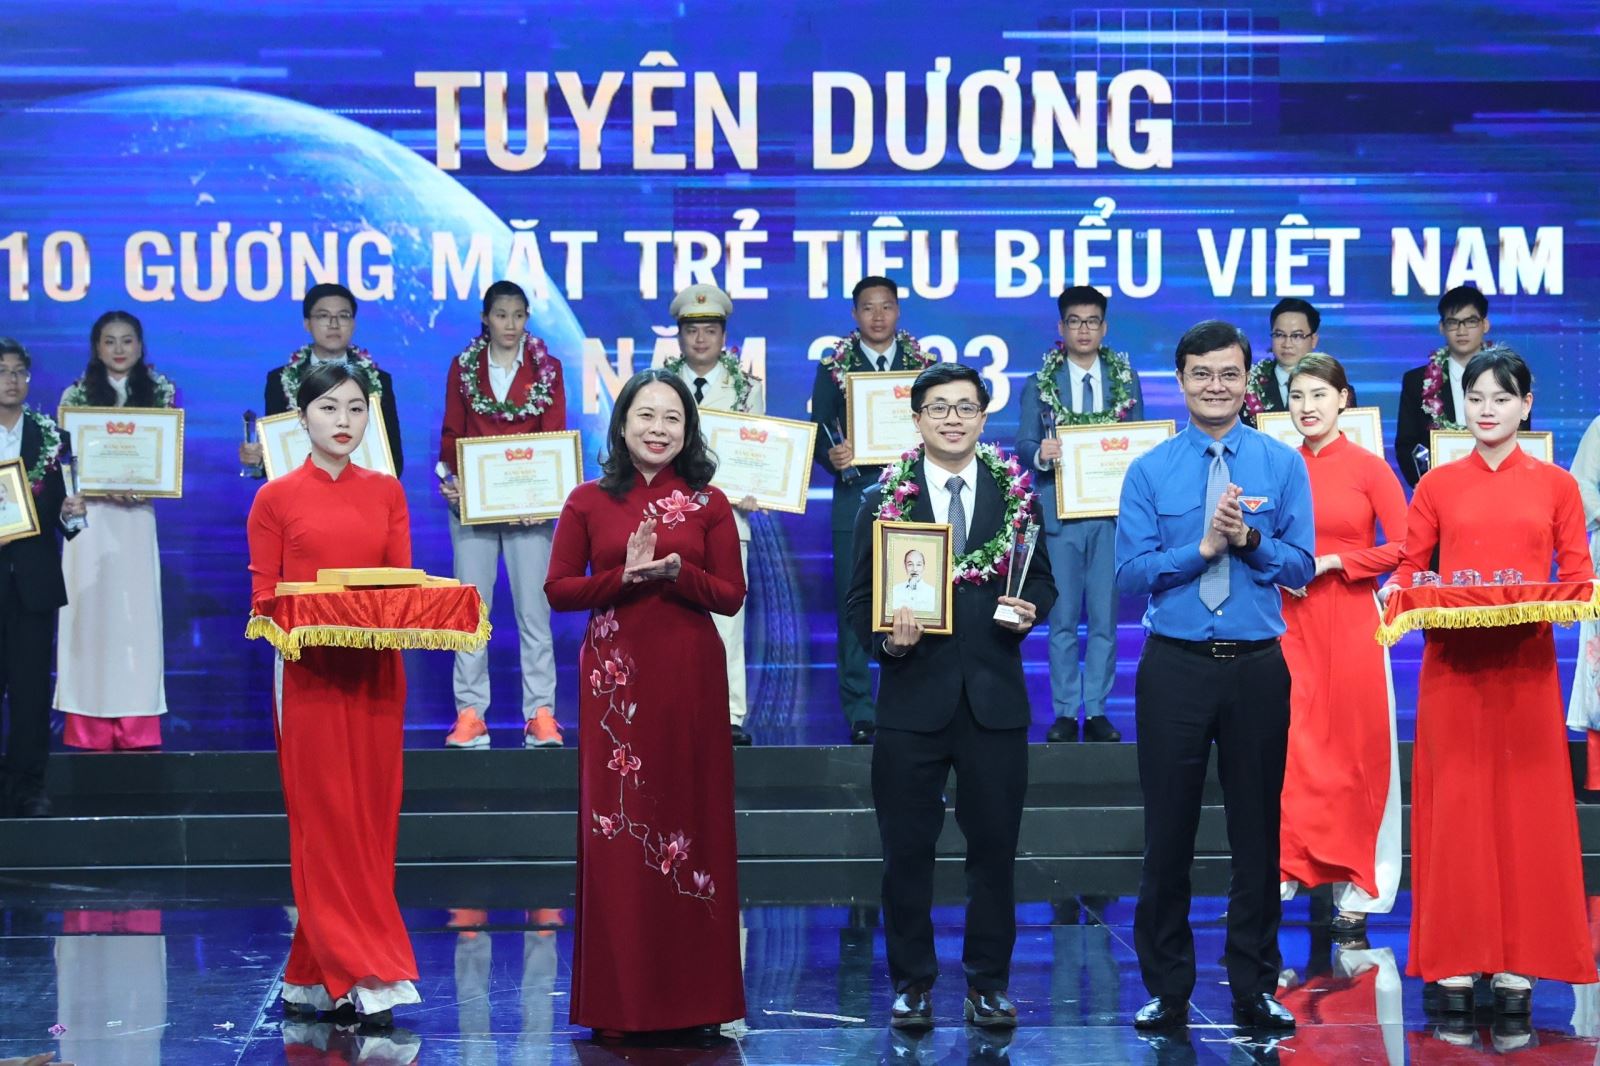 Một người con quê hương Bắc Ninh vinh dự là một trong 10 gương mặt trẻ tiêu biểu Việt Nam năm 2023